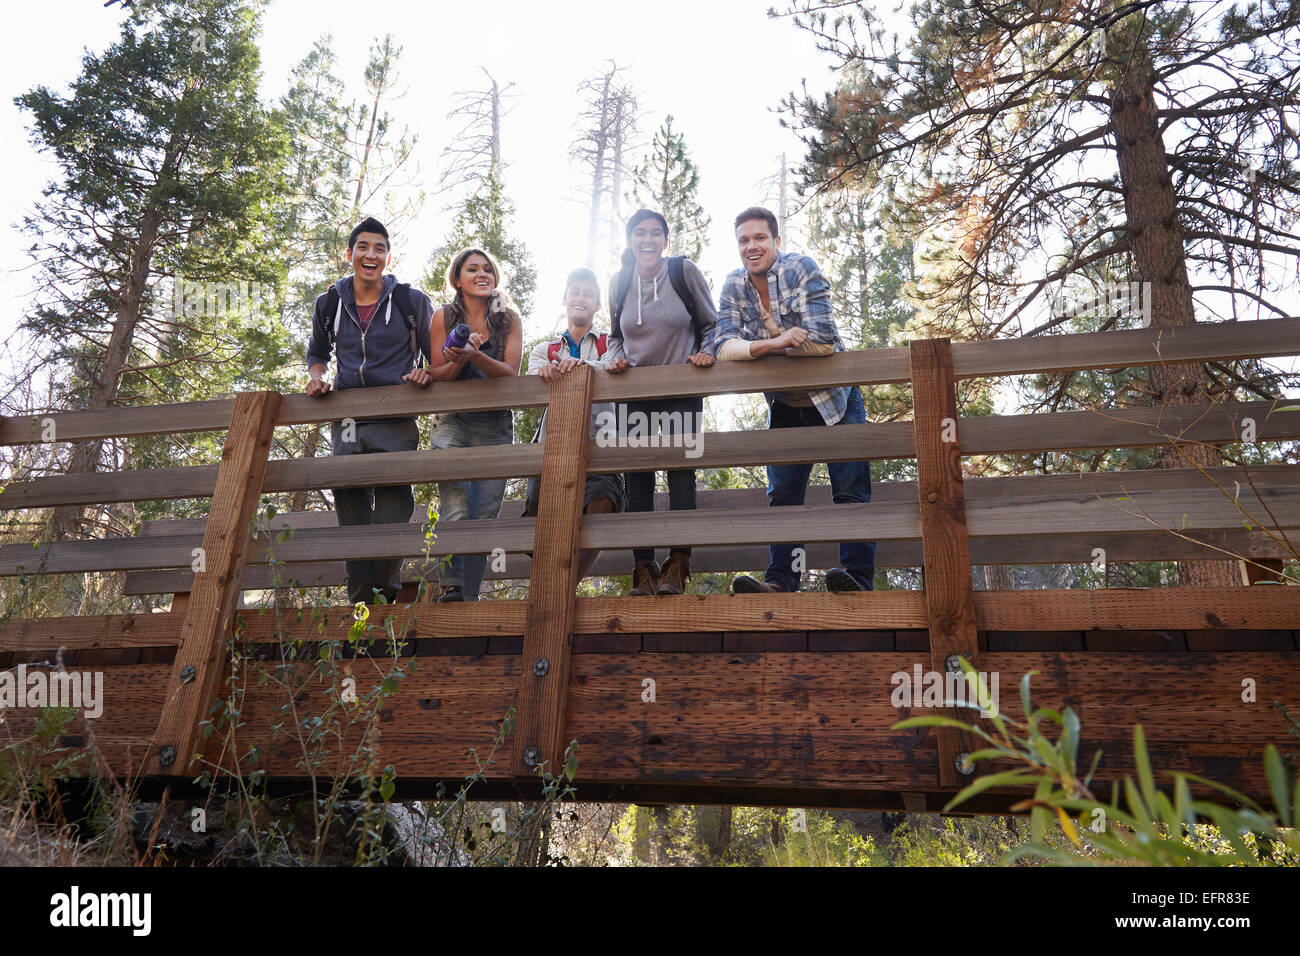 Porträt von fünf jungen Erwachsenen Freunden auf hölzerne Brücke im Wald, Los Angeles, Kalifornien, USA Stockfoto